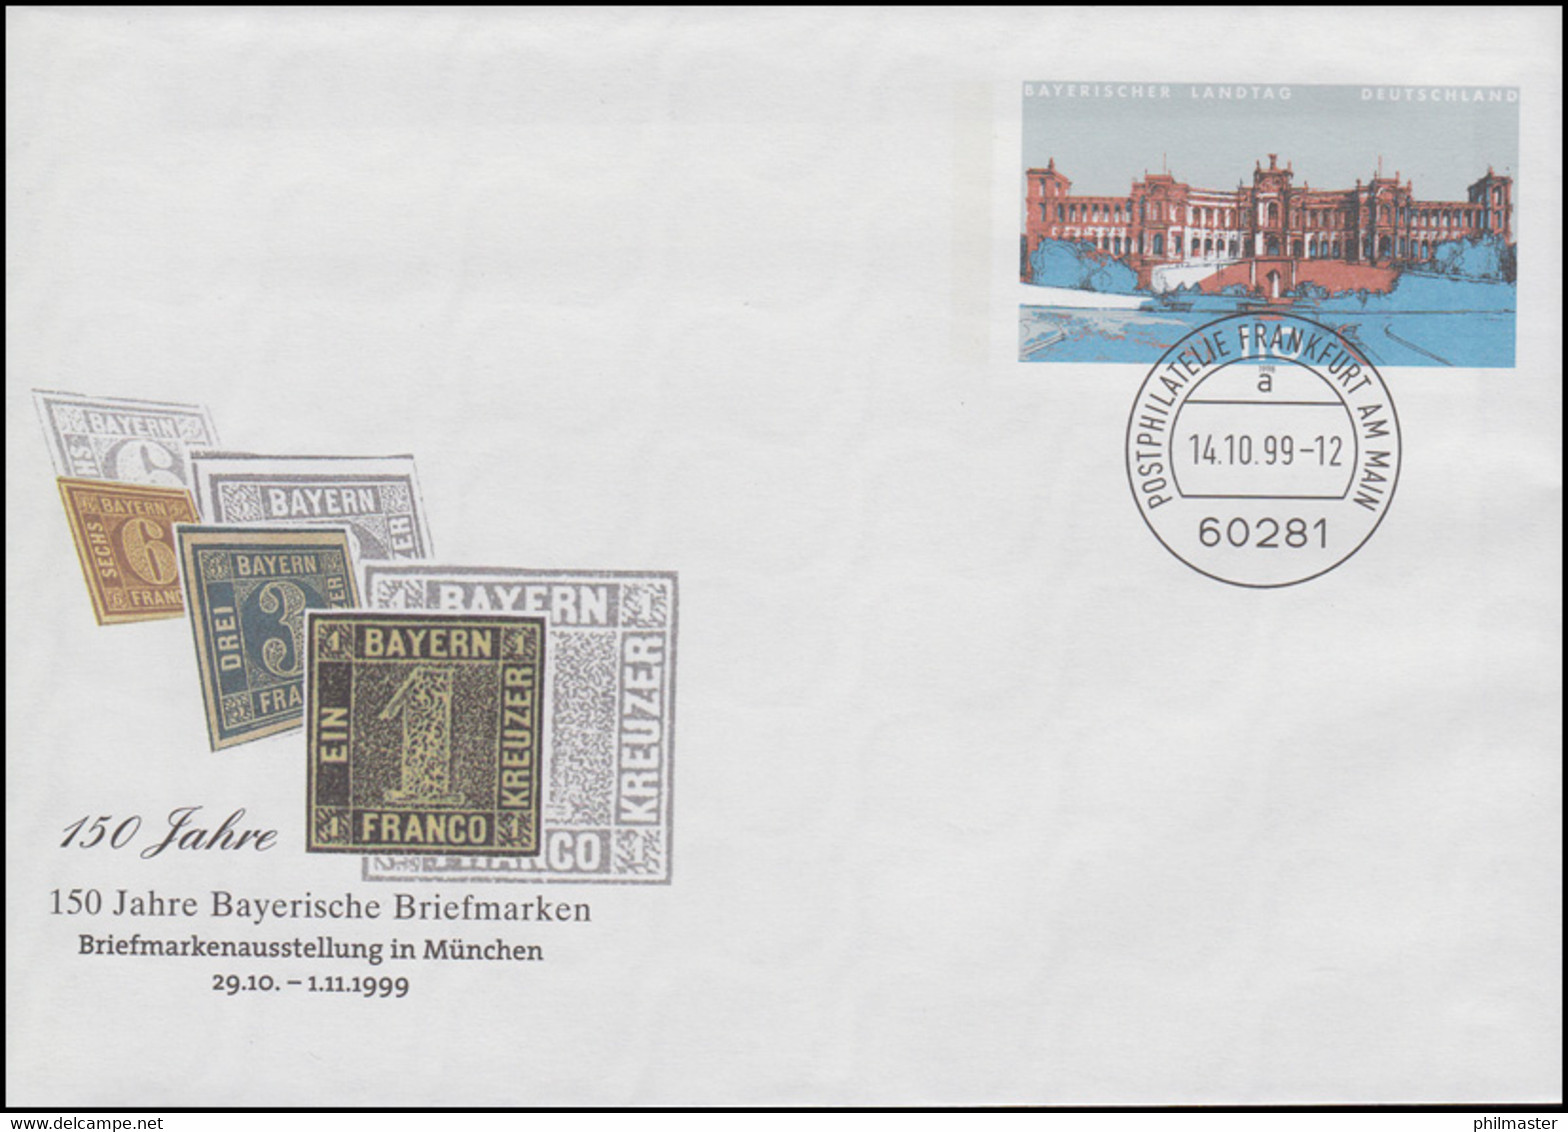 USo 11 Bayerische Briefmarken, VS-O Frankfurt 14.10.99 - Enveloppes - Neuves